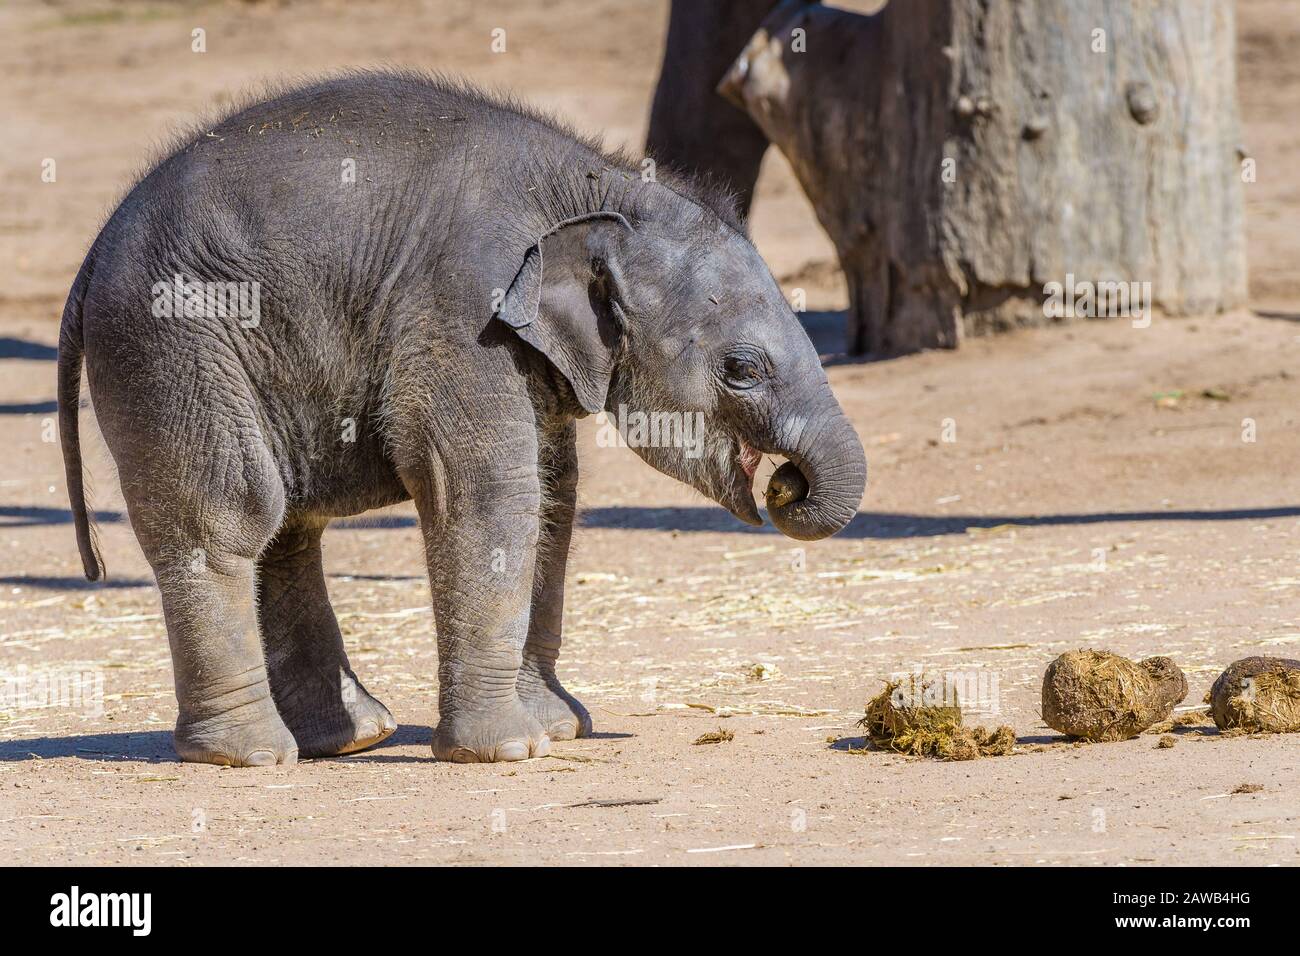 Il più nuovo asatico, elefante di Dubbo Zoo australiano che mangia le feci di sua madre per migliorare la funzione intestinale, la salute e la resistenza. Foto Stock